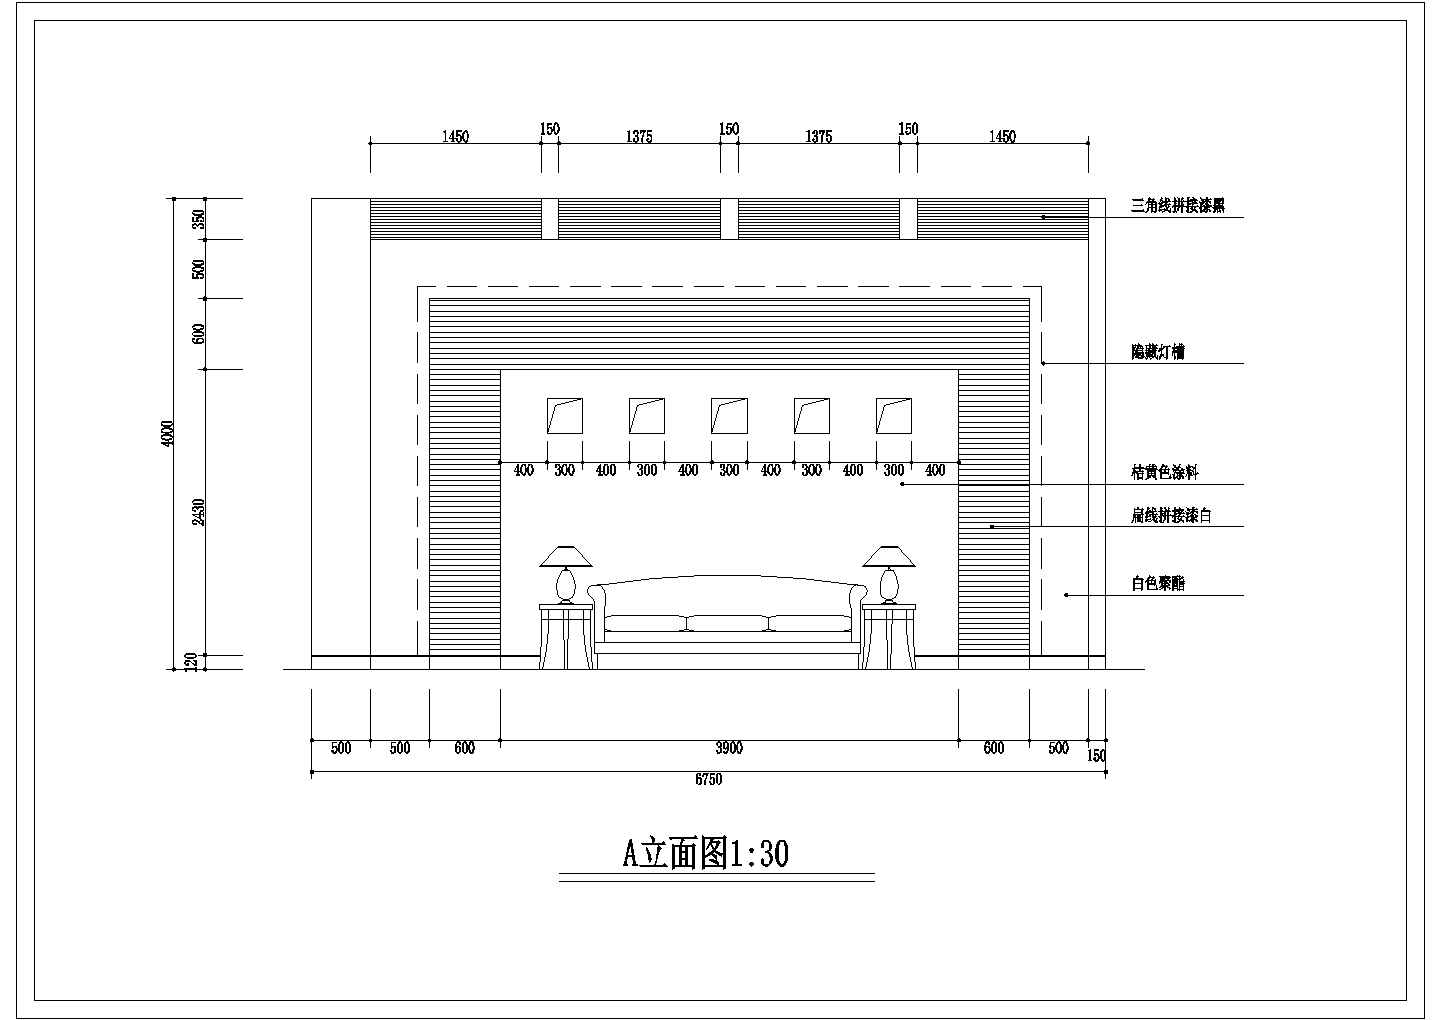 南京某大众4s店展示厅全套装修施工设计cad图(含天棚布置图)